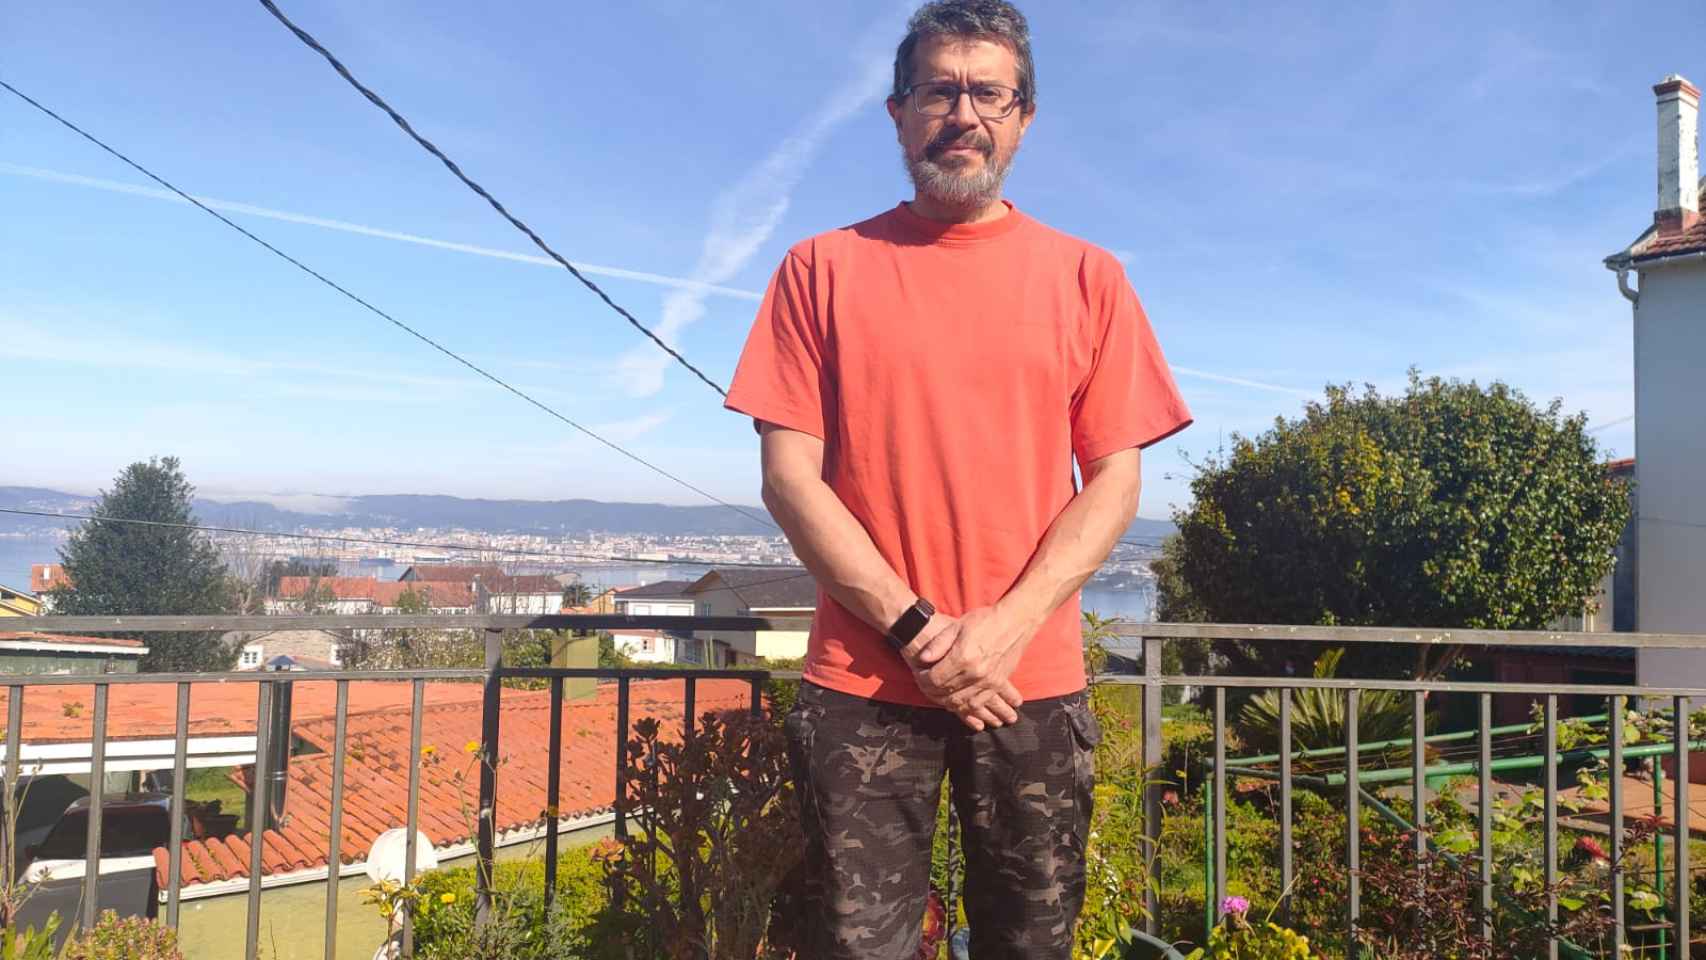 La vida de Raúl Cabarcos: fichado por Repsol después de estudiar un FP con más de 40 años